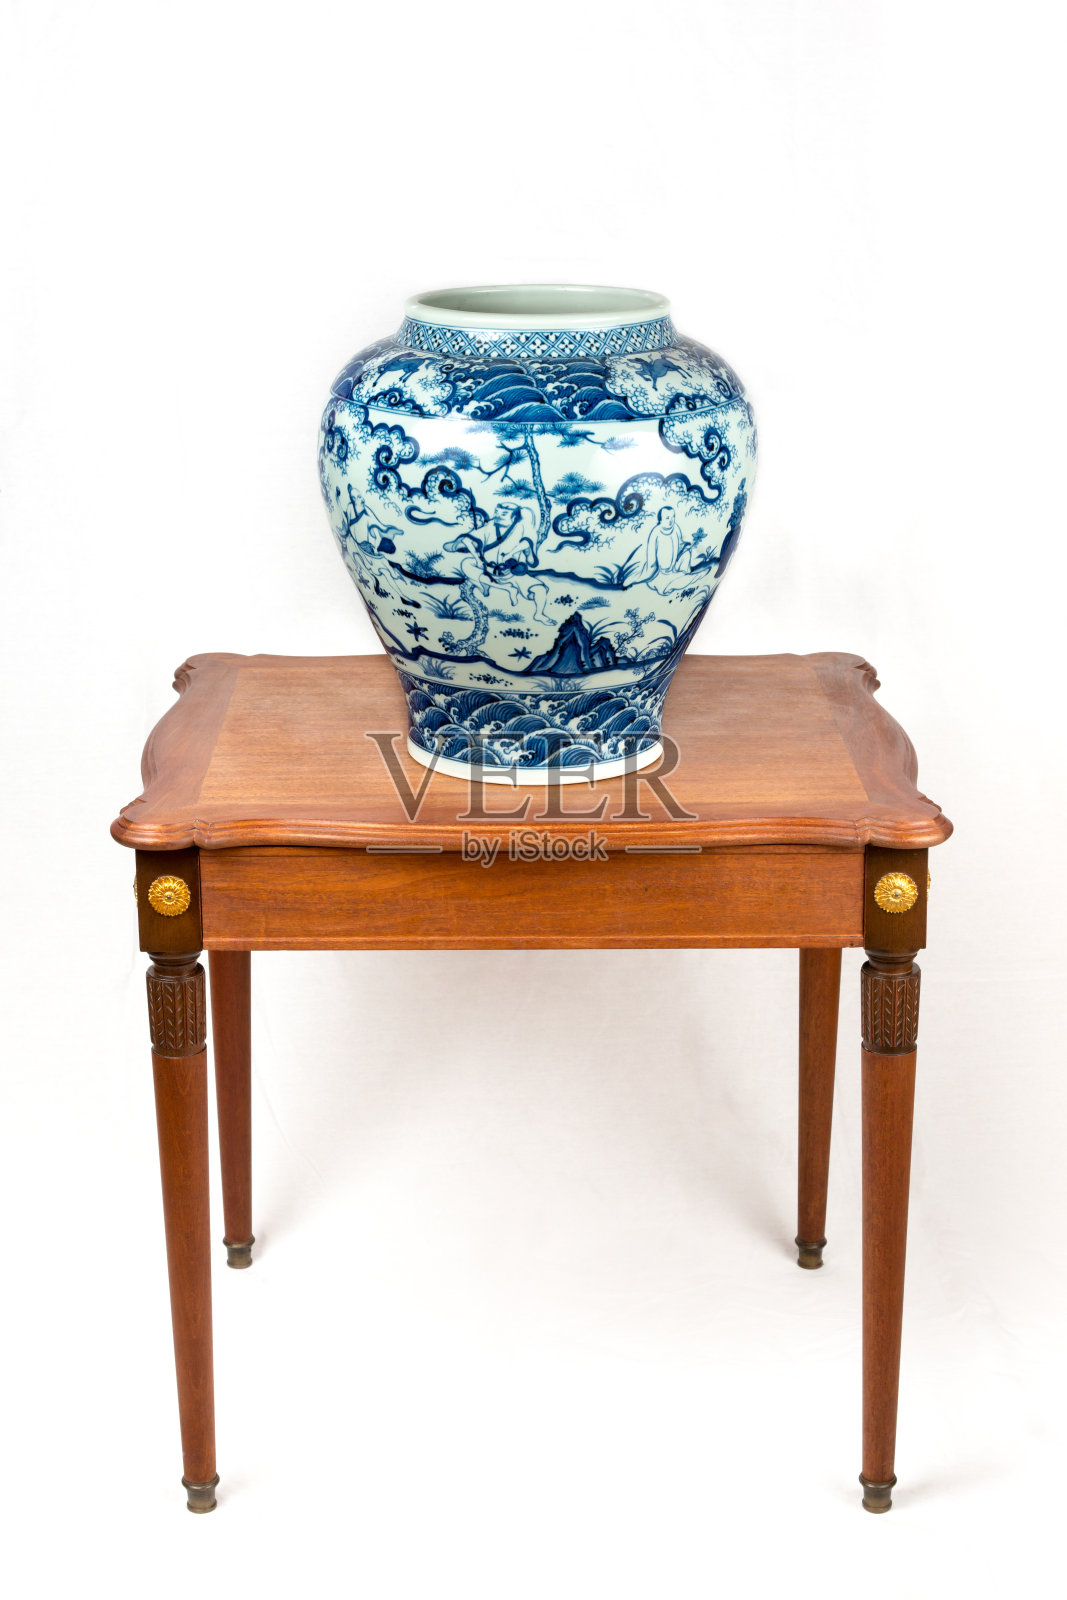 中国青花瓷缸的复制品照片摄影图片